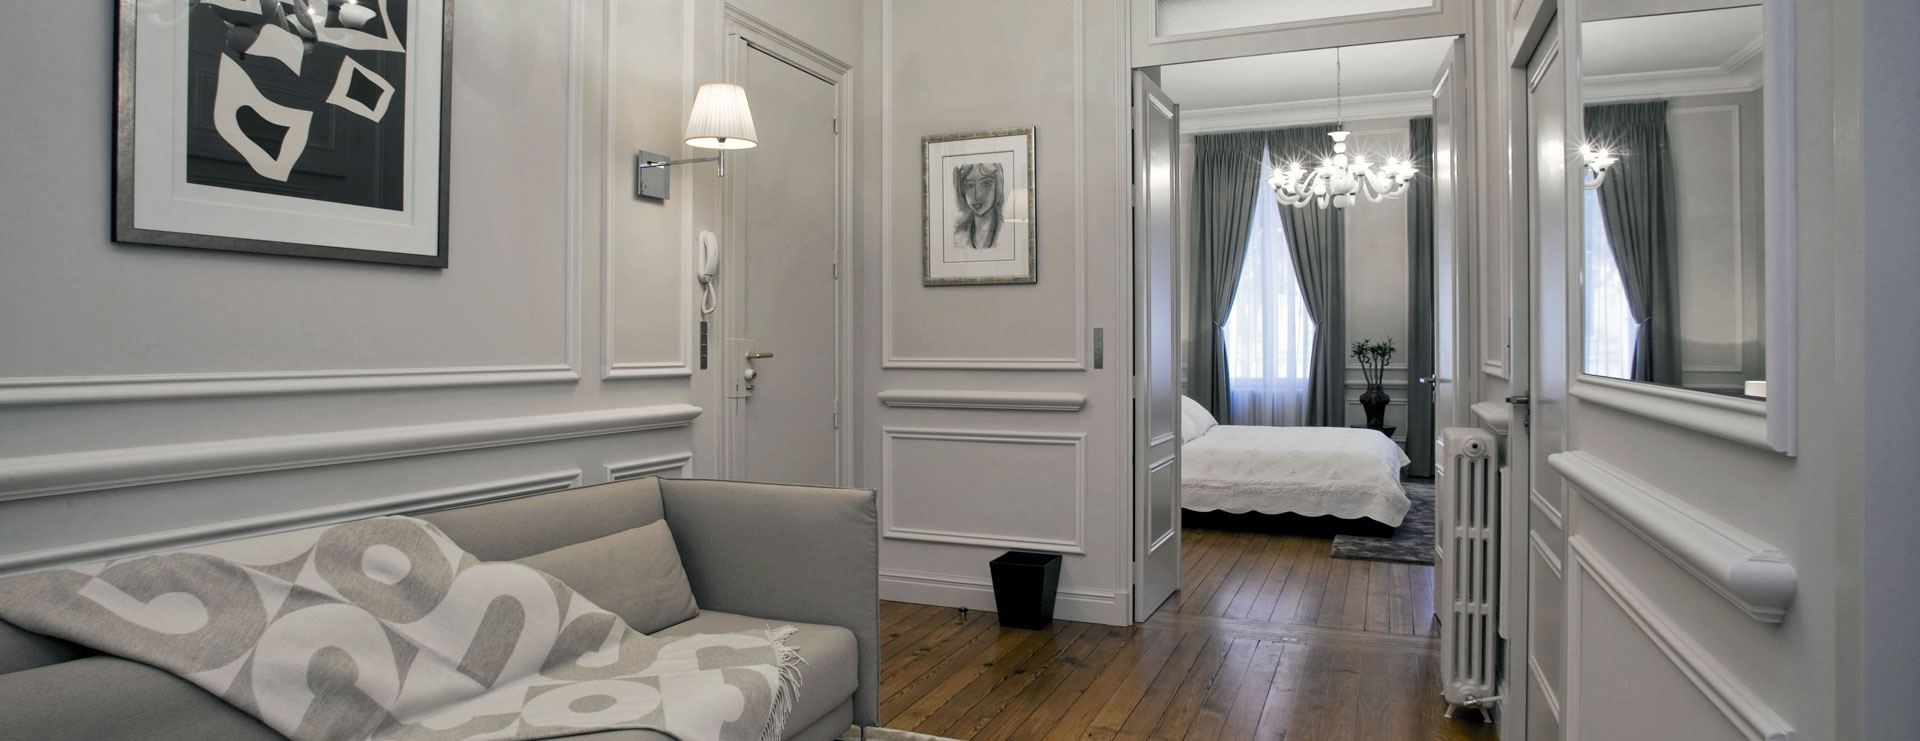 L'appartement mis à disposition des patients | Meilleur médecin esthétique Bordeaux